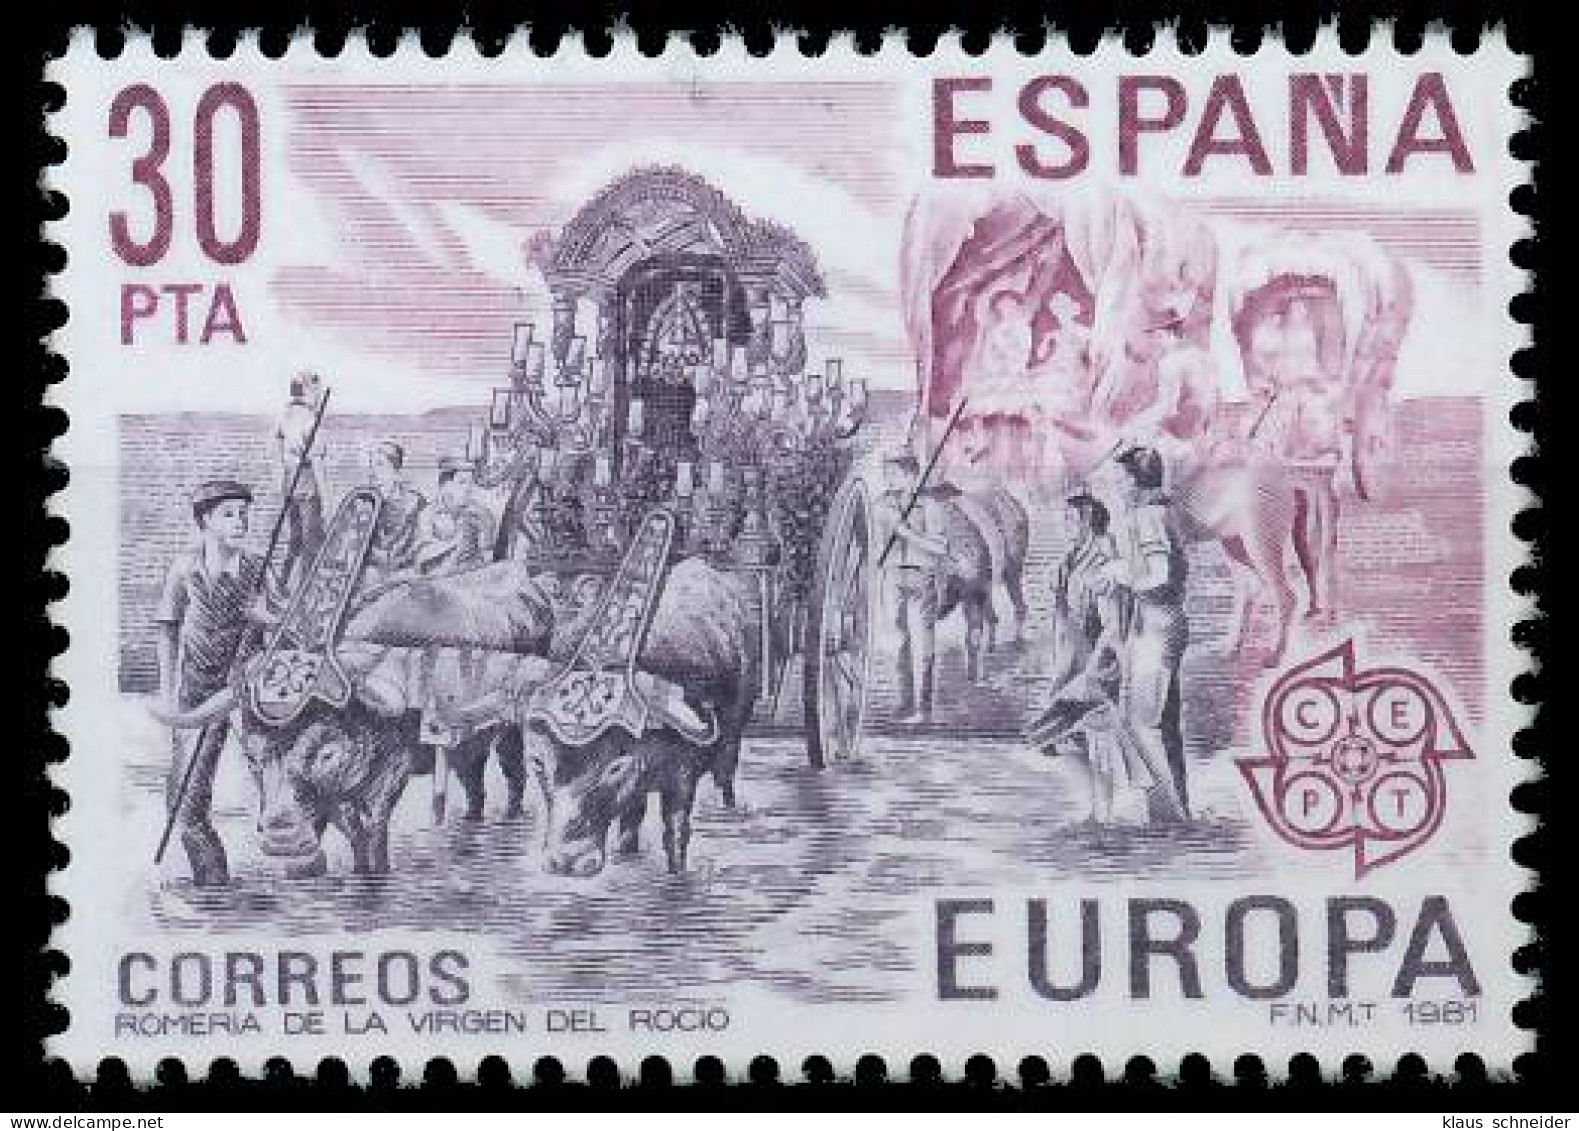 SPANIEN 1981 Nr 2499 Postfrisch S1D7BDE - Ongebruikt